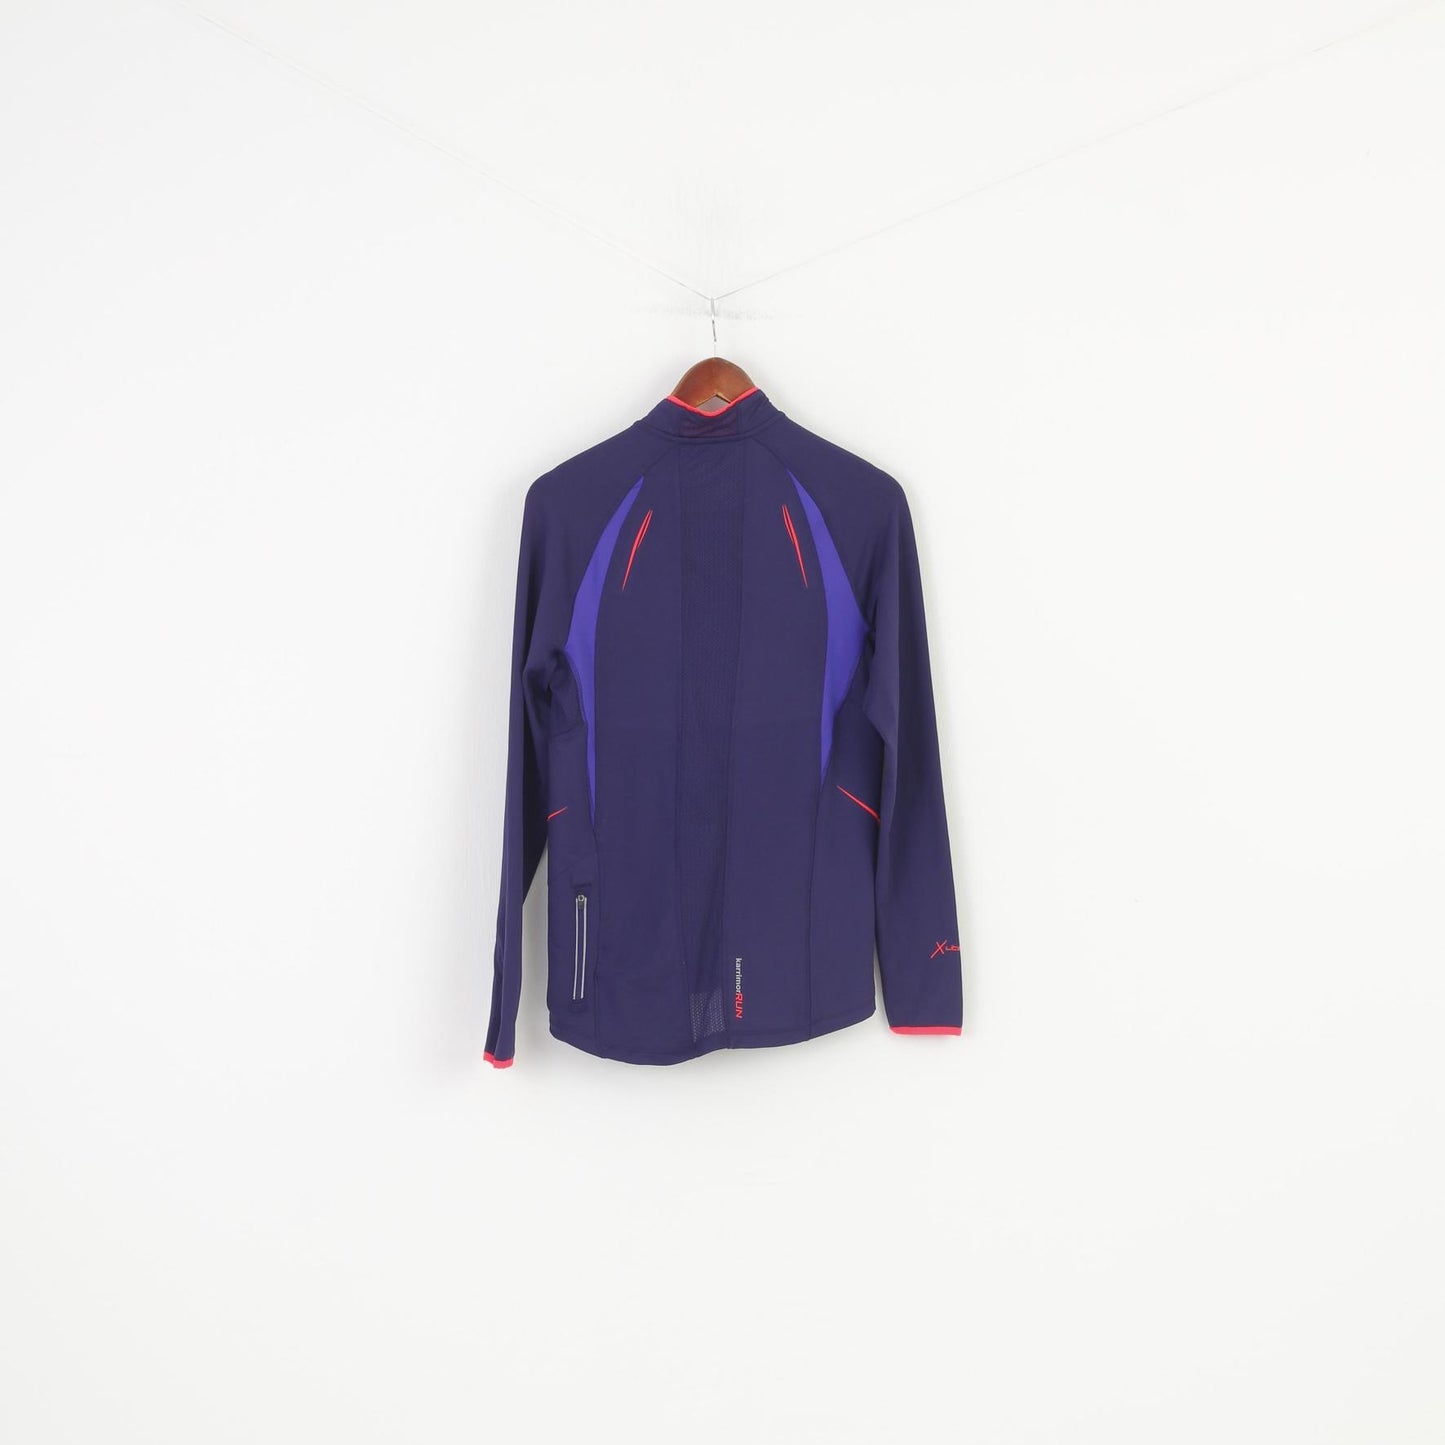 Karrimor Woman 12 M Longsleeve Purple Zip Neck Sportwear Run Outwear Top